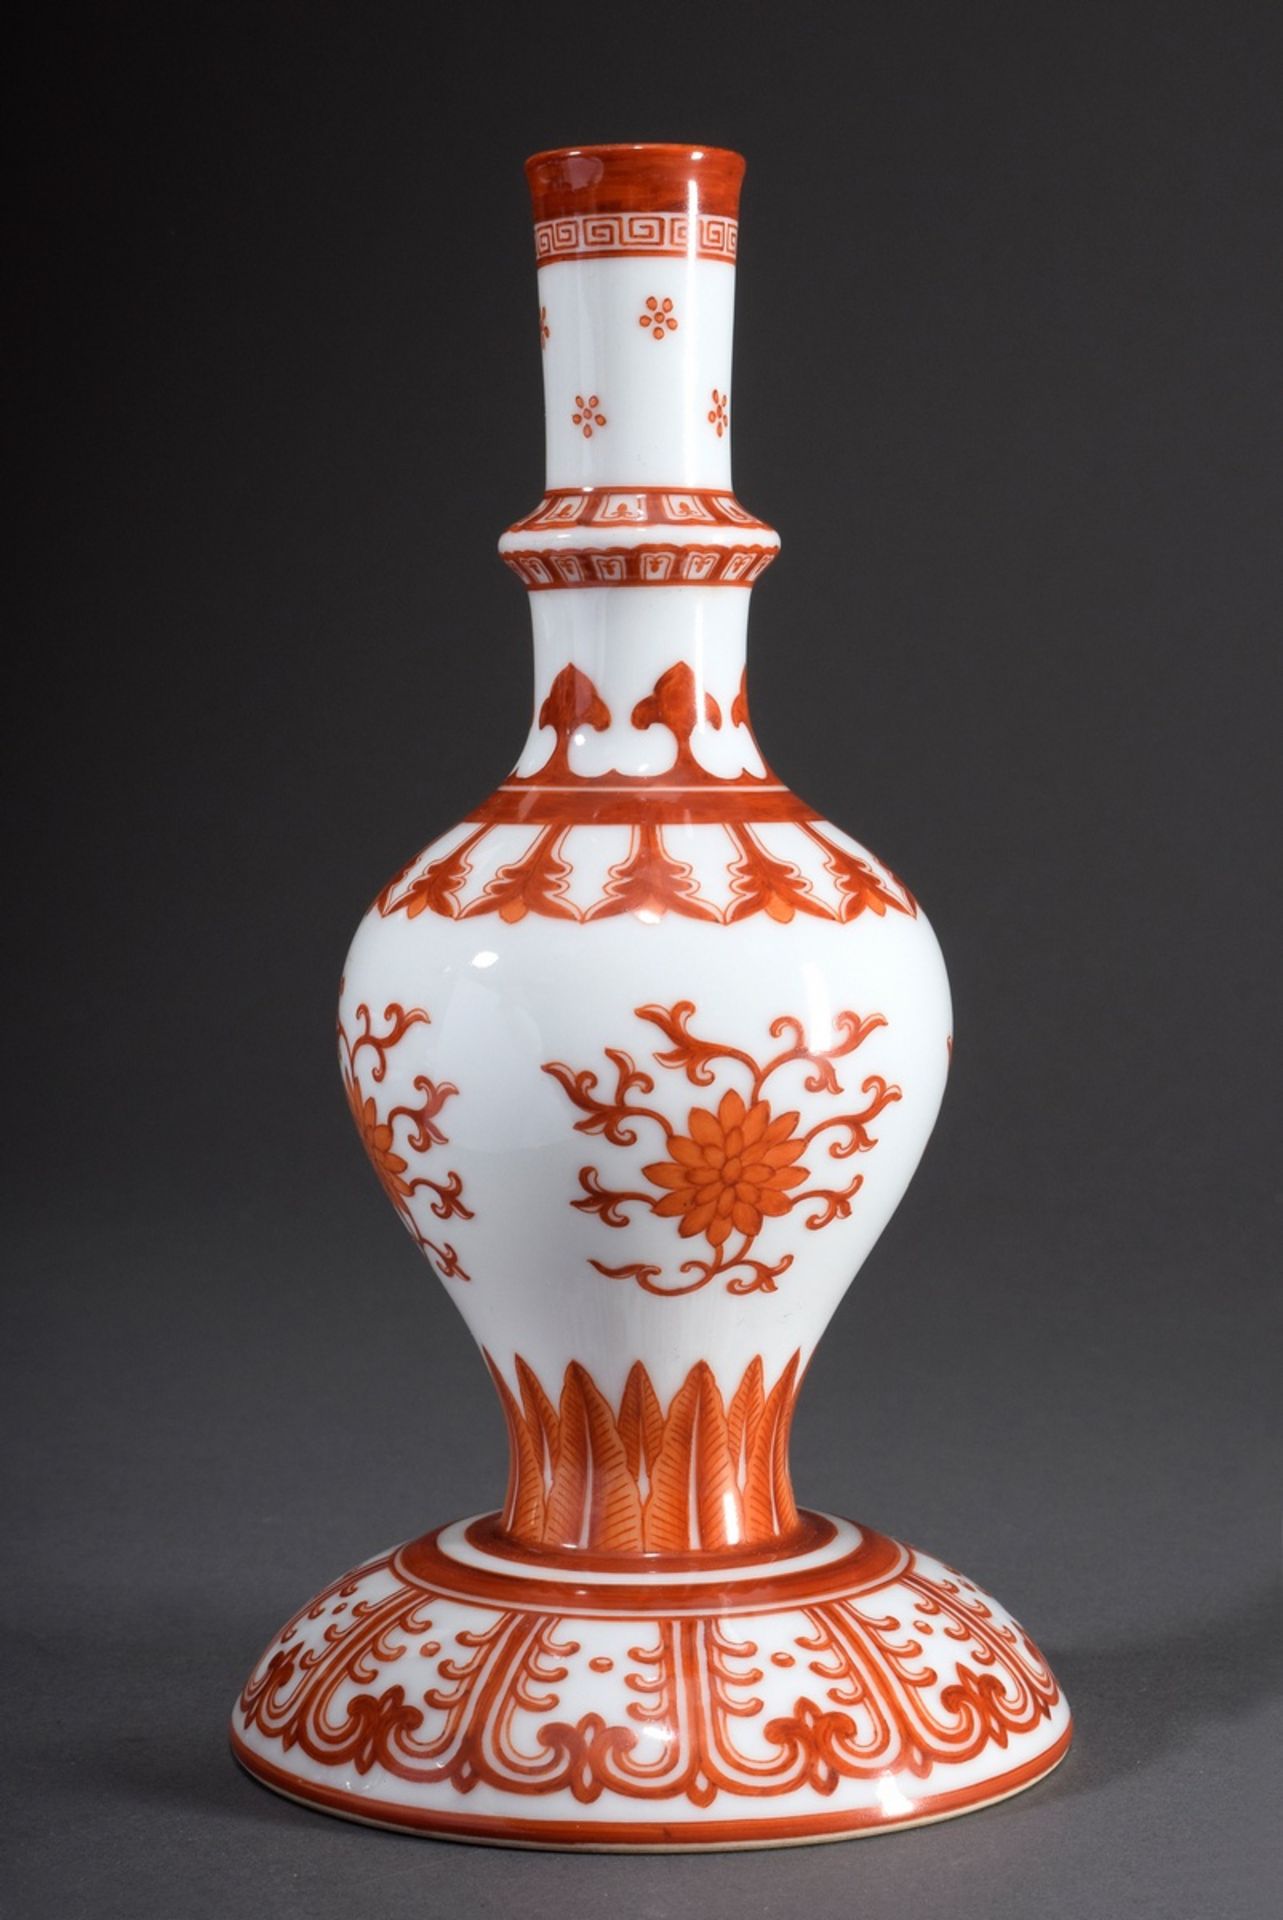 Chinesische Rosenwasser Vase/Sprenkler sogenannt | Chinese rose water vase/sprinkler so called "Hol